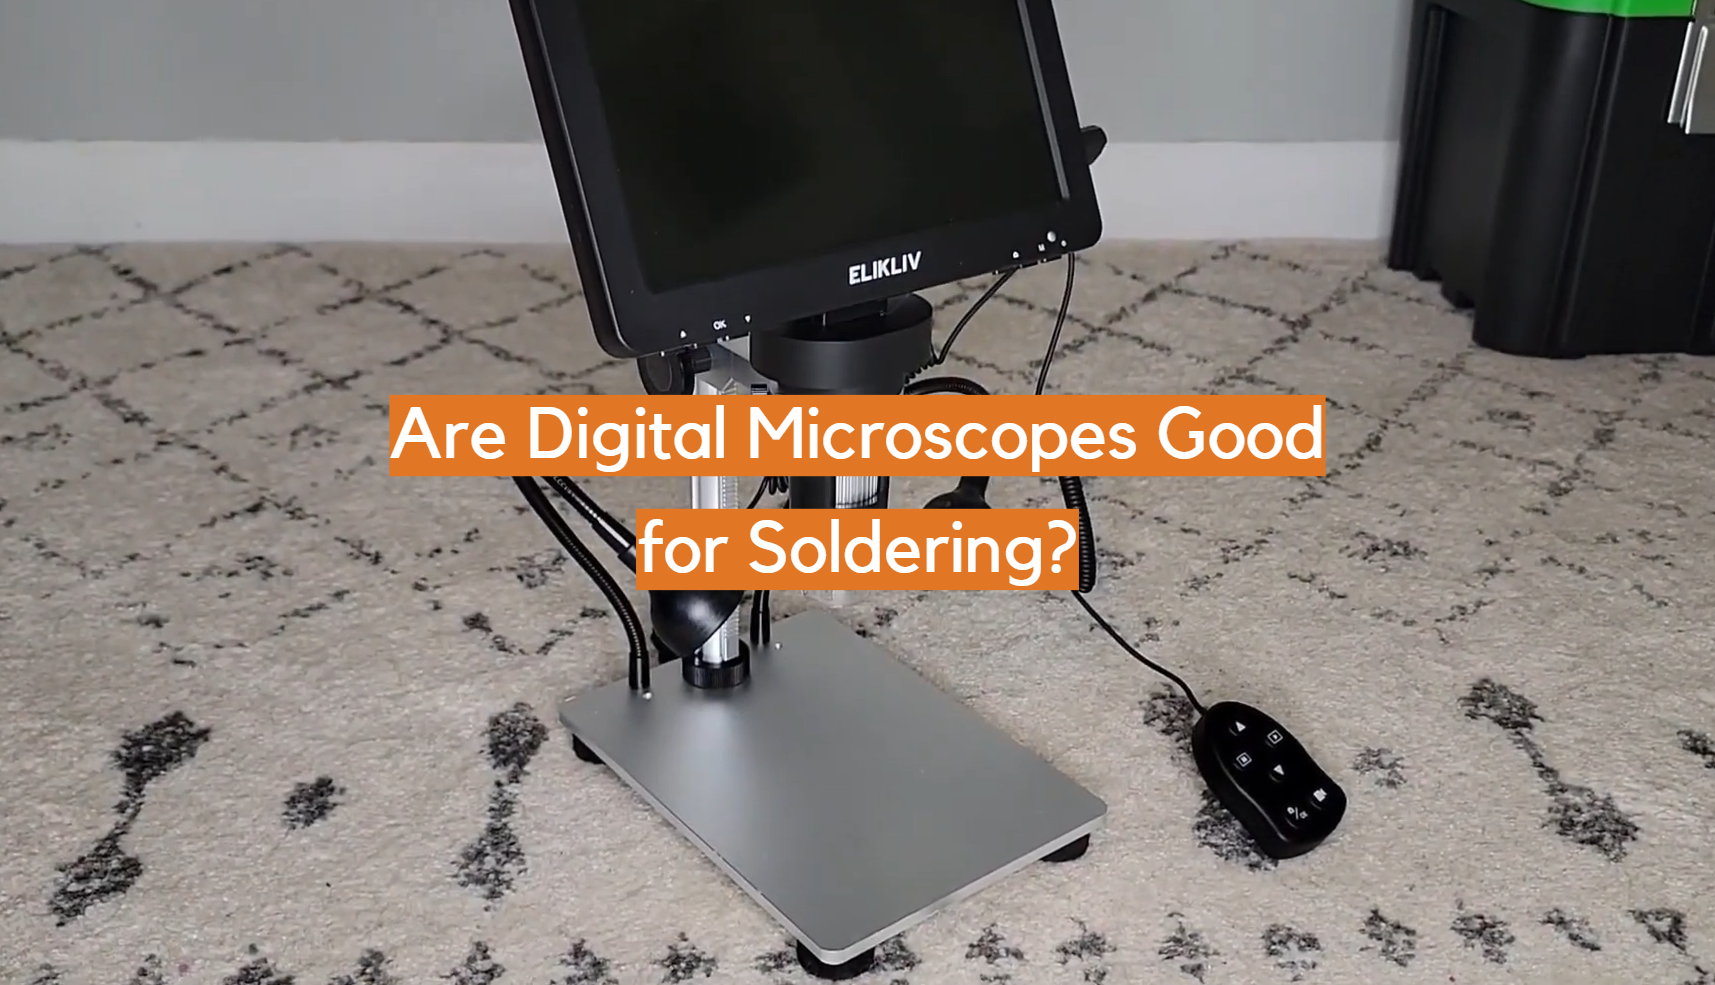 ¿Los microscopios digitales son buenos para soldar?